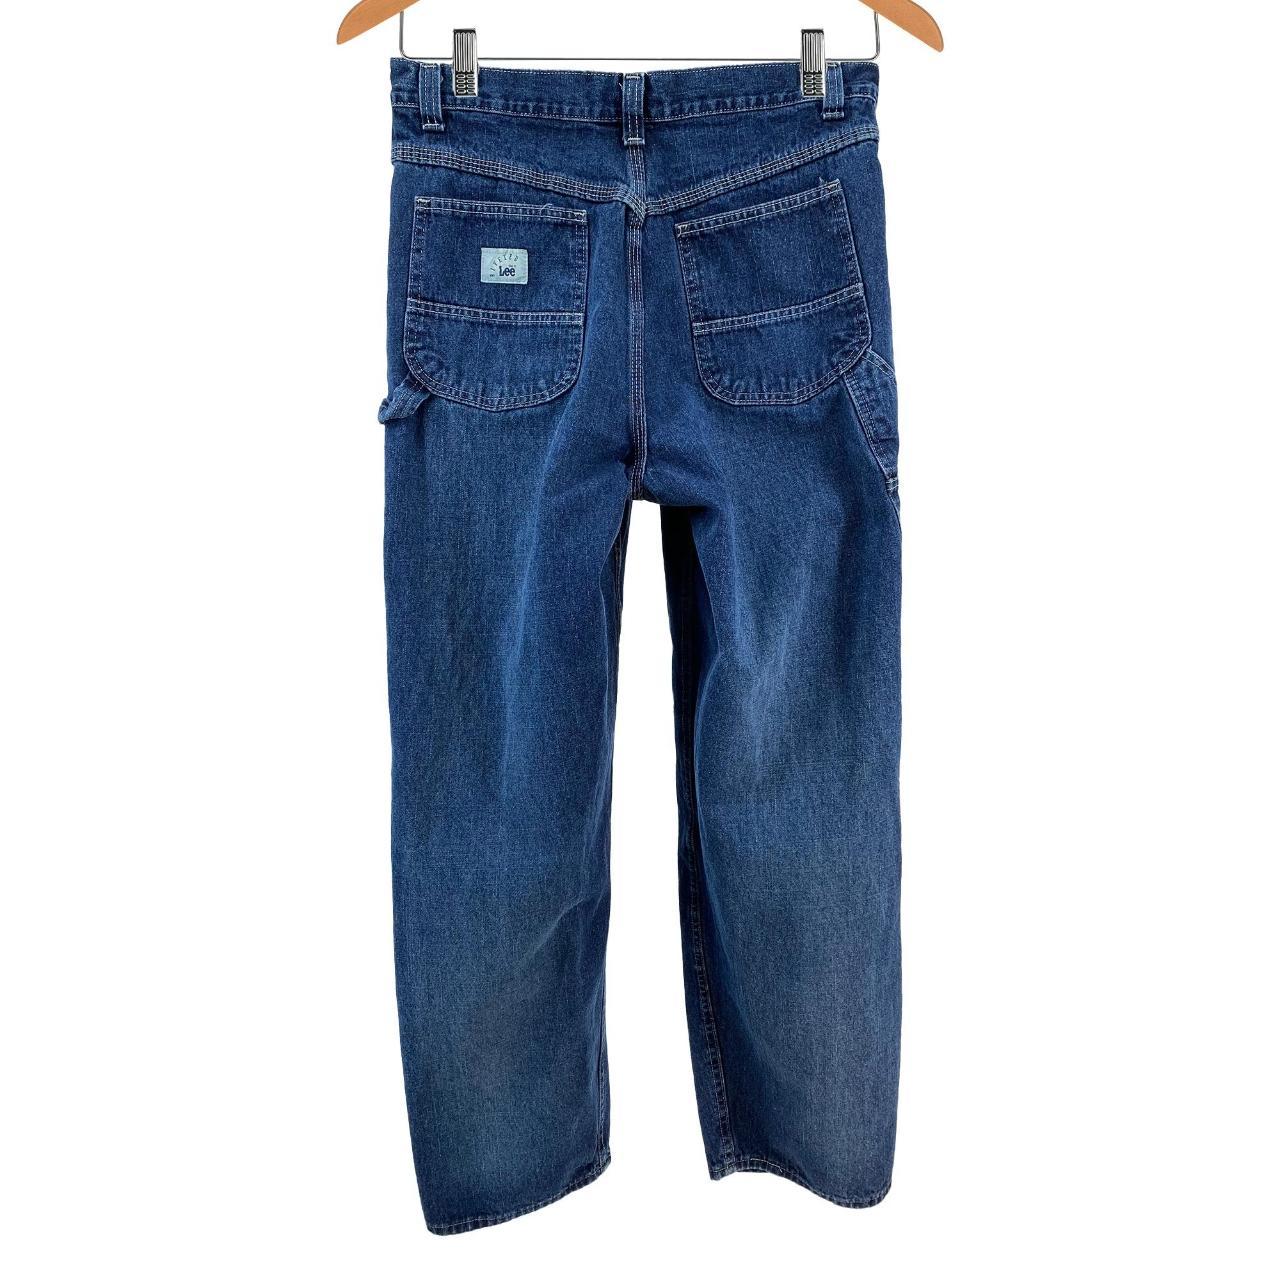 Vintage '90s Lee Riveted Carpenter Jeans - Women's... - Depop